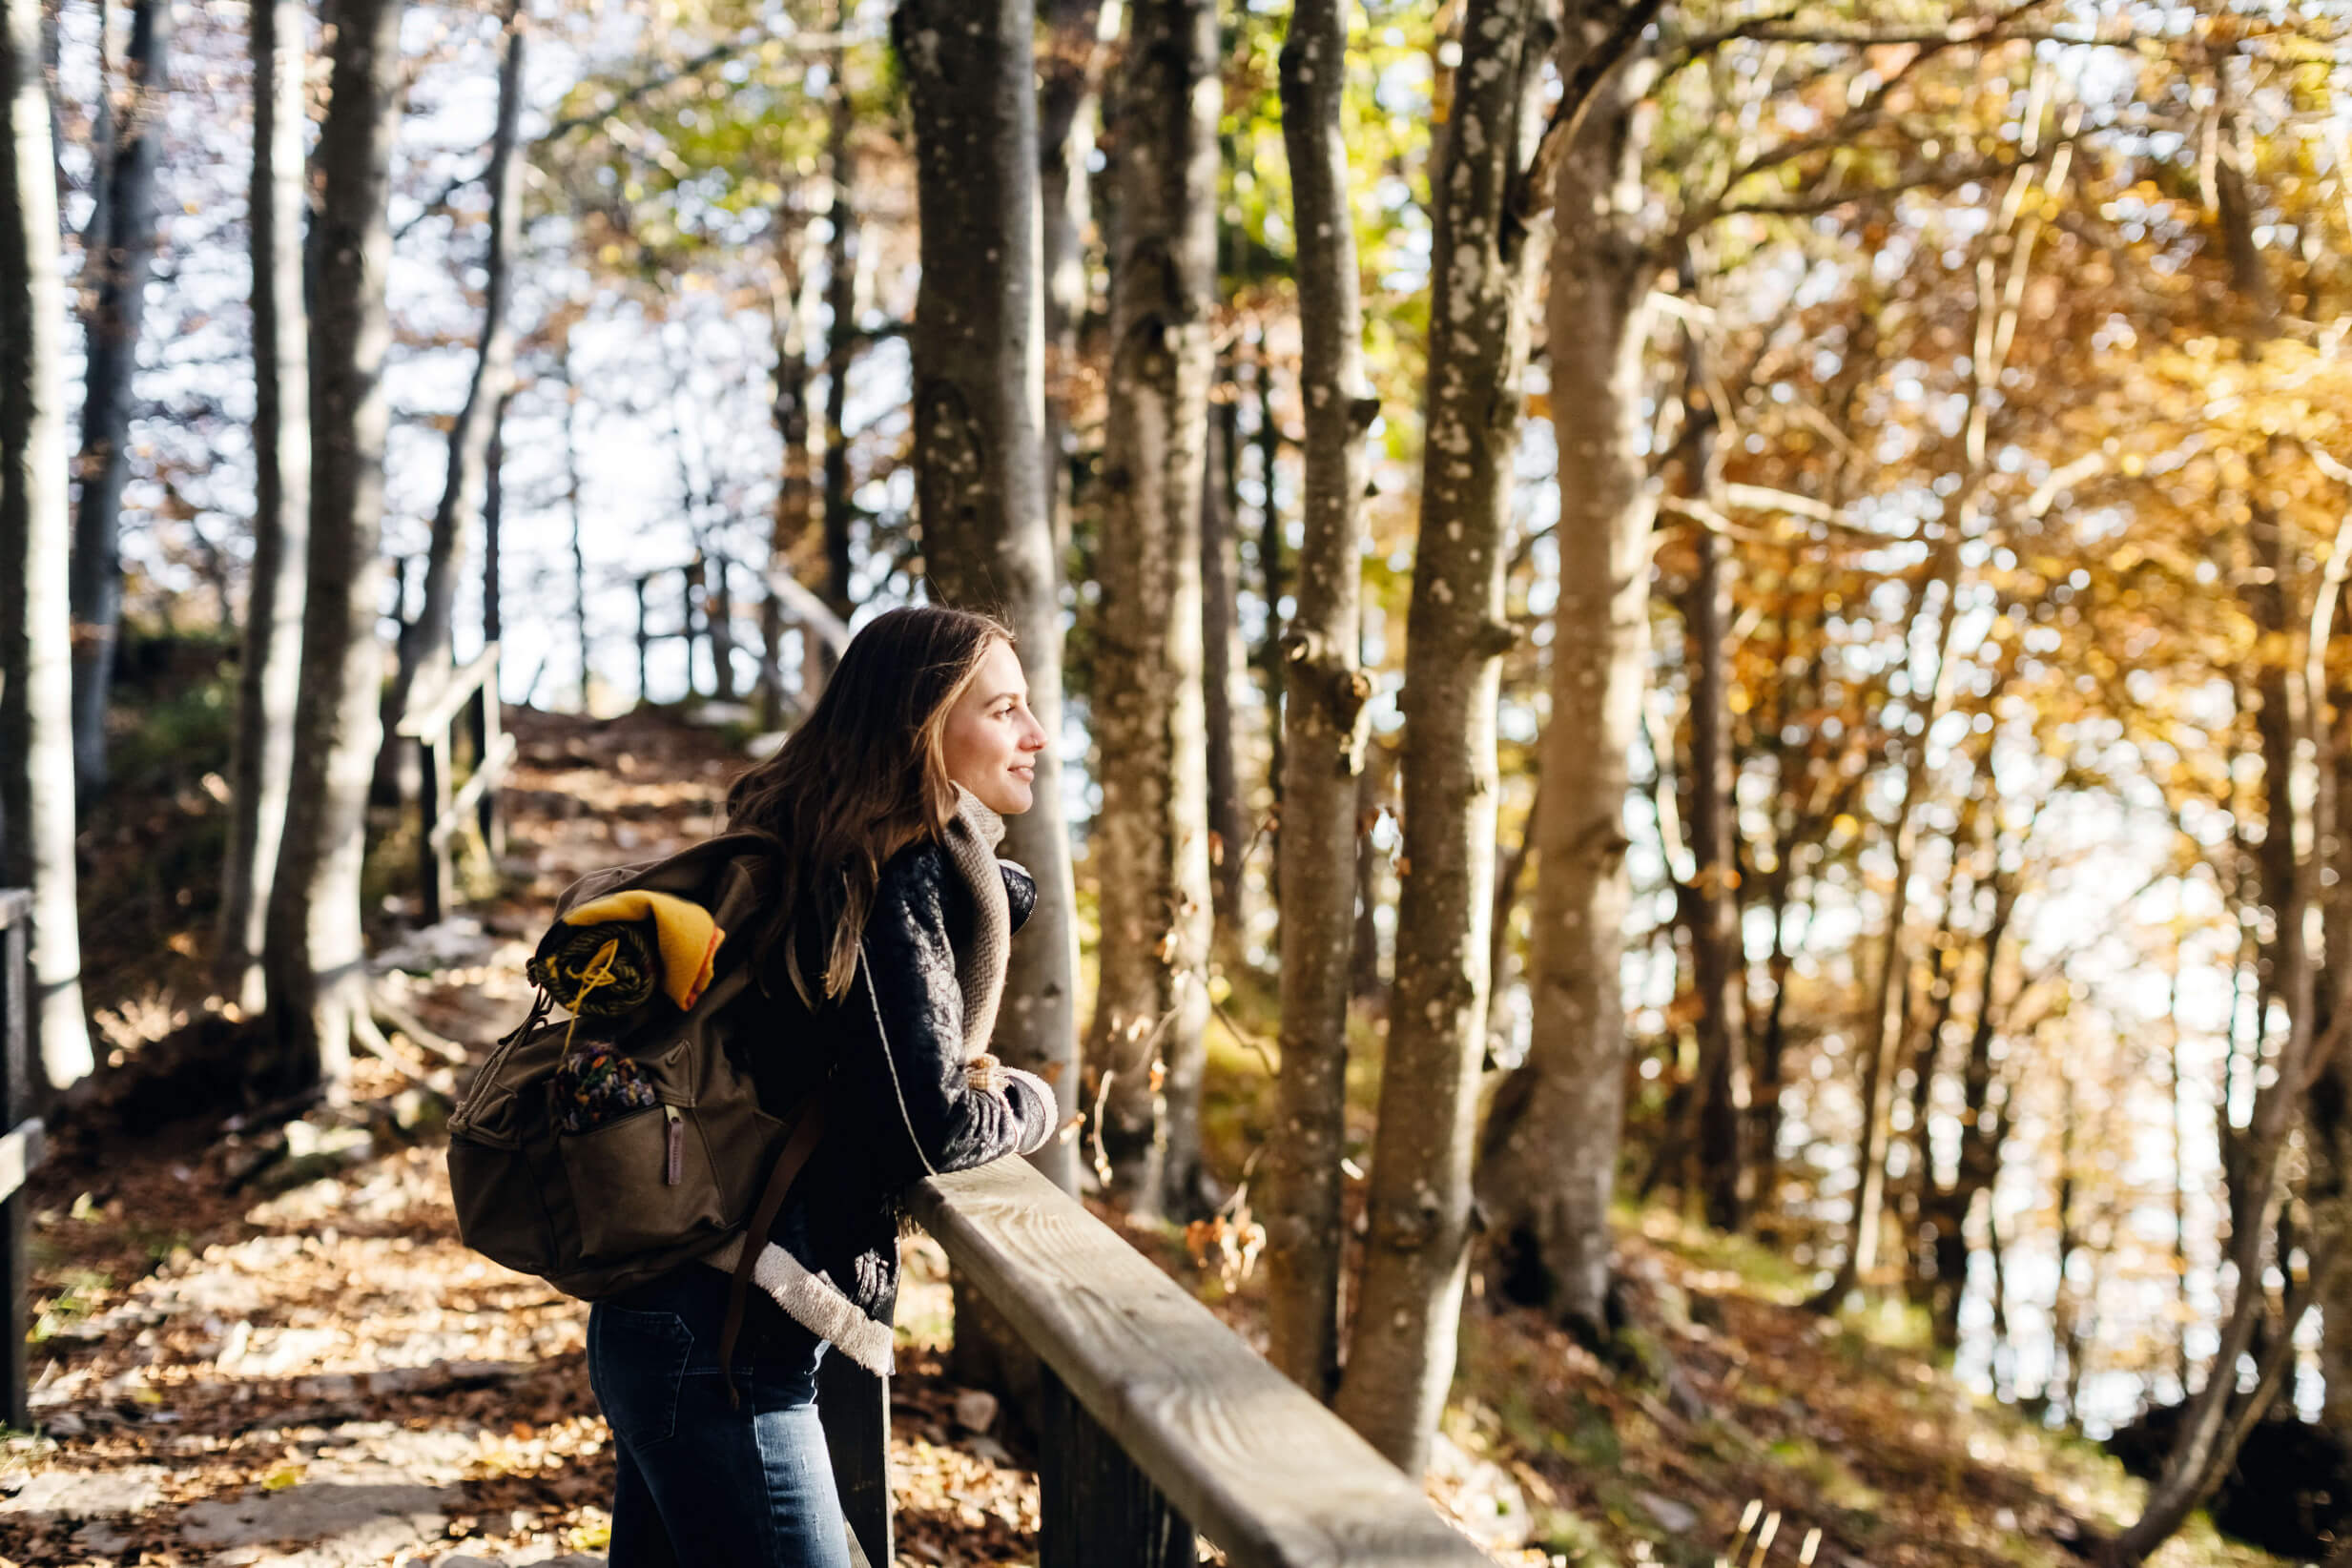 Eine junge Frau lehnt in einem Herbstwald an einem Holzgeländer und schaut lächelnd in die Natur.